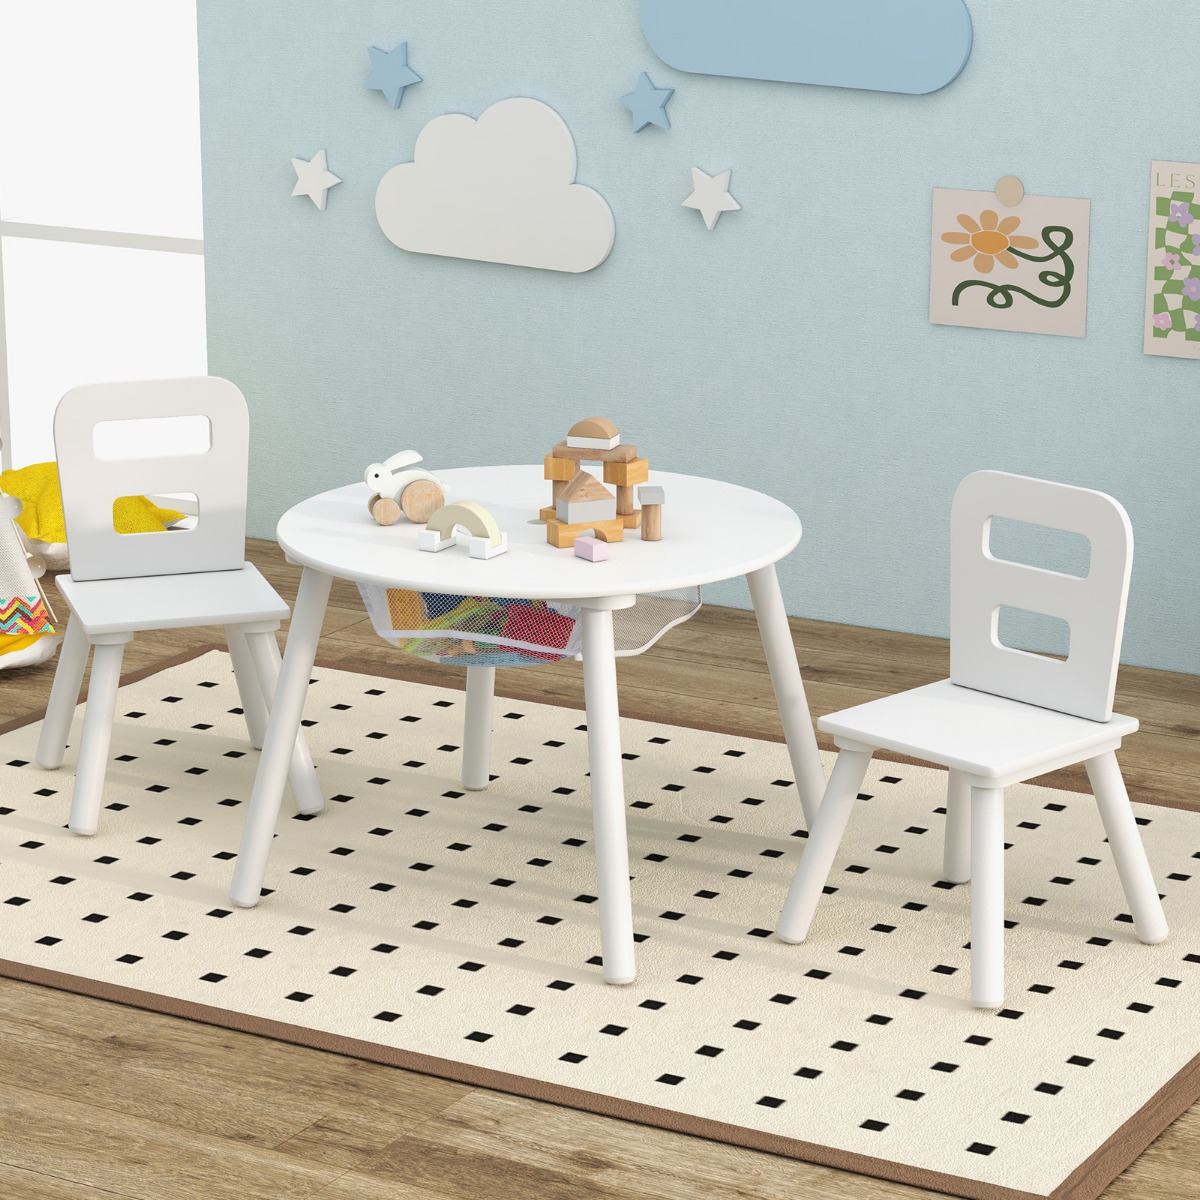 Kindertisch mit 2 Stühlen 3 TLG. Kindersitzgruppe aus Holz Kindermöbel-Set stapelbar Weiß